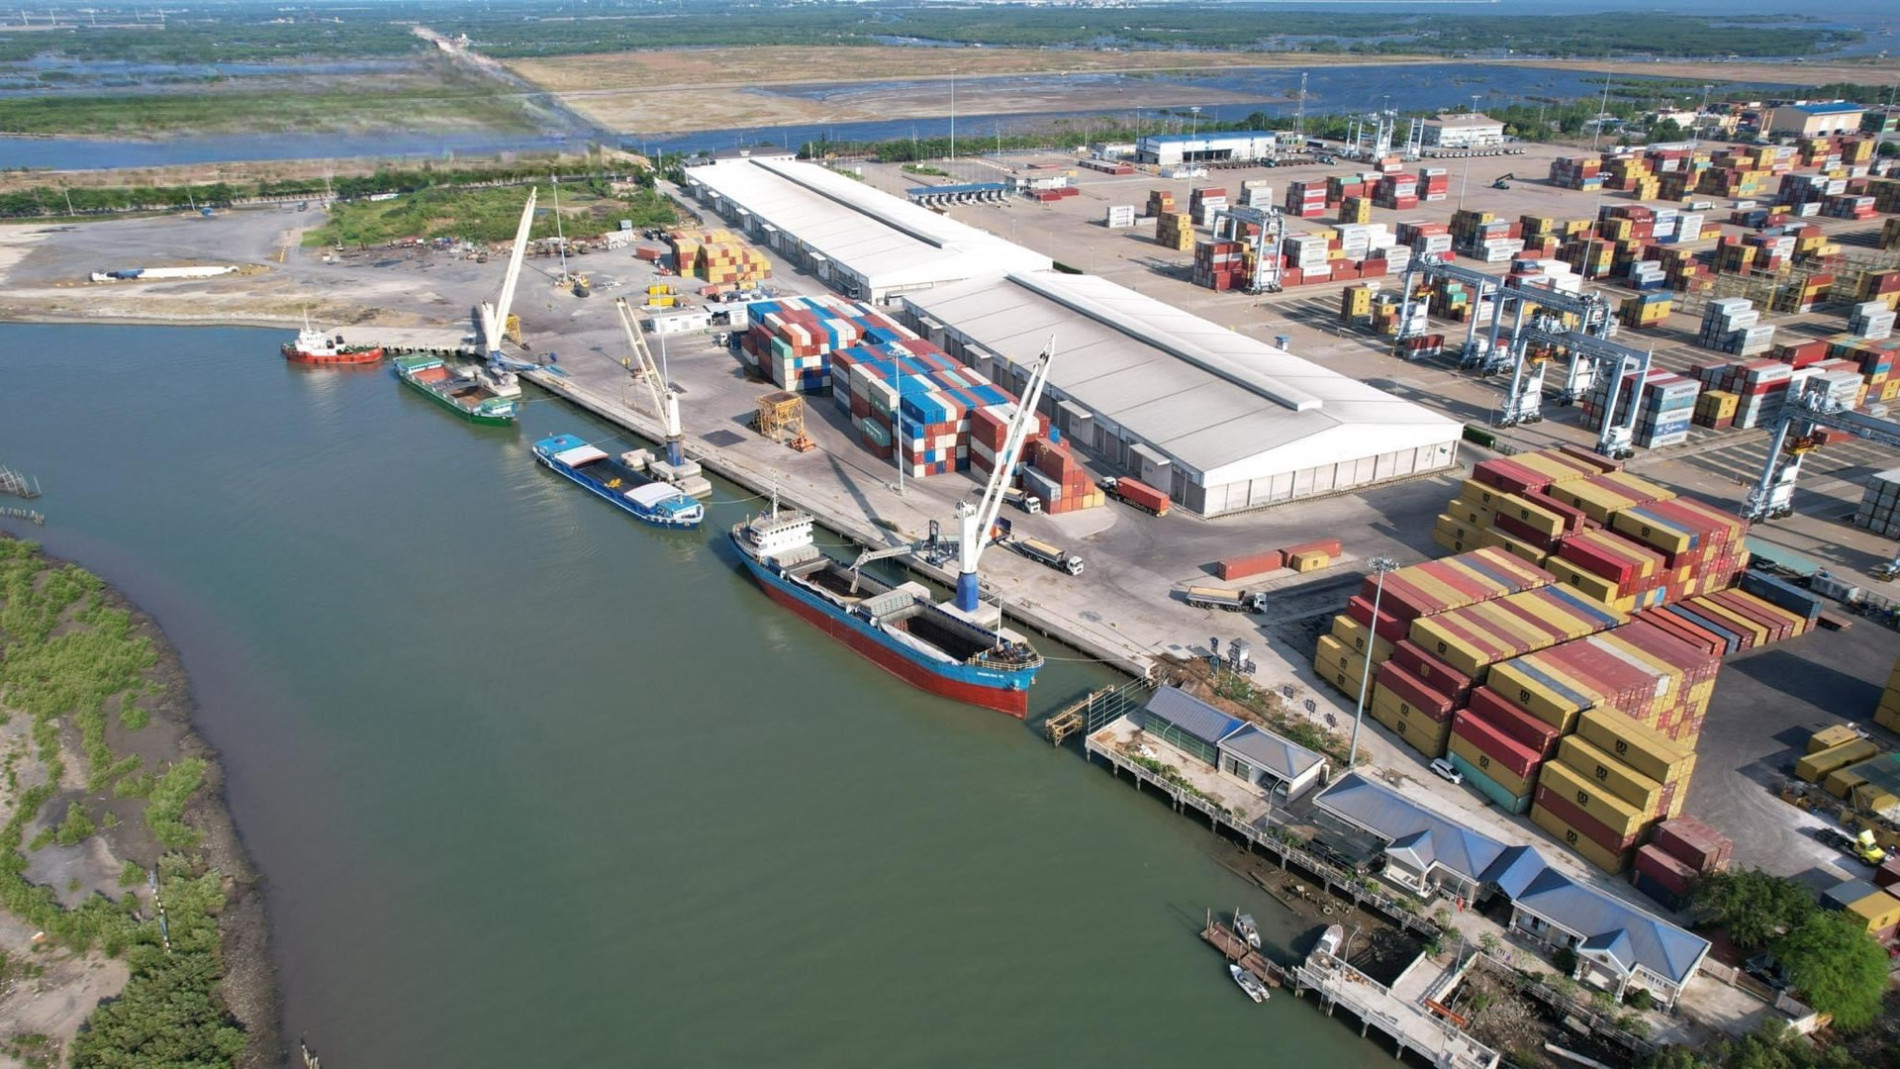 Cảng Dịch vụ tổng hợp Hưng Thái, ICD (cảng cạn) đầu tiên của tỉnh, được cấp phép để khai thác các tàu, sà lan chạy tuyến nước ngoài